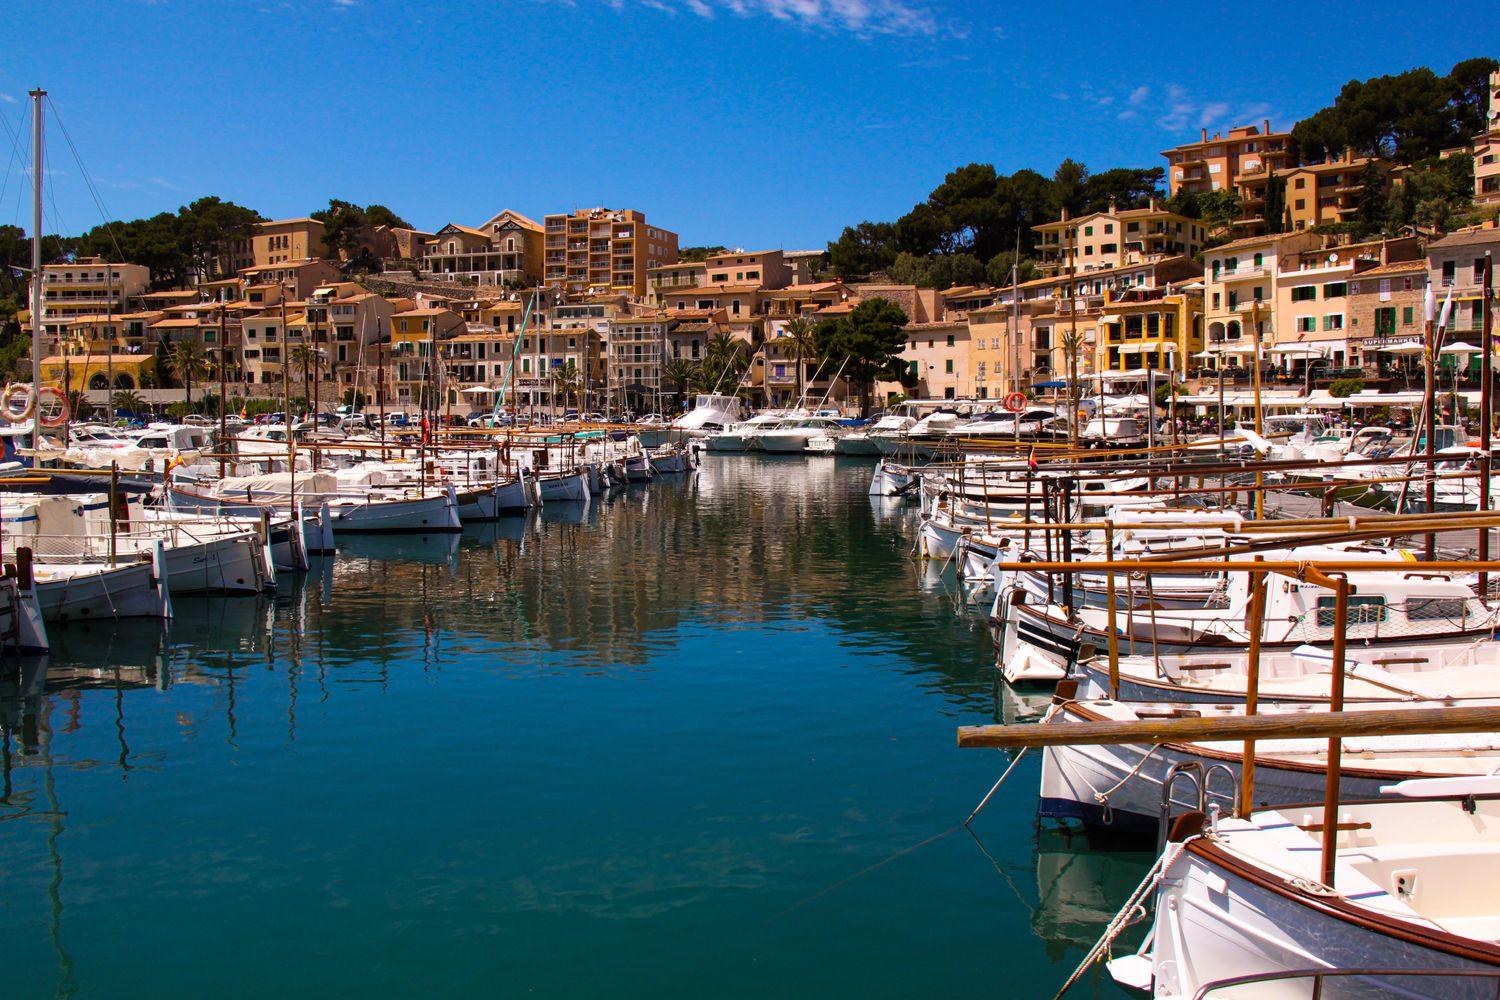 Blick von der Yacht auf türkises Wasser und Charteryachten am Poet de Soller, Mallorca